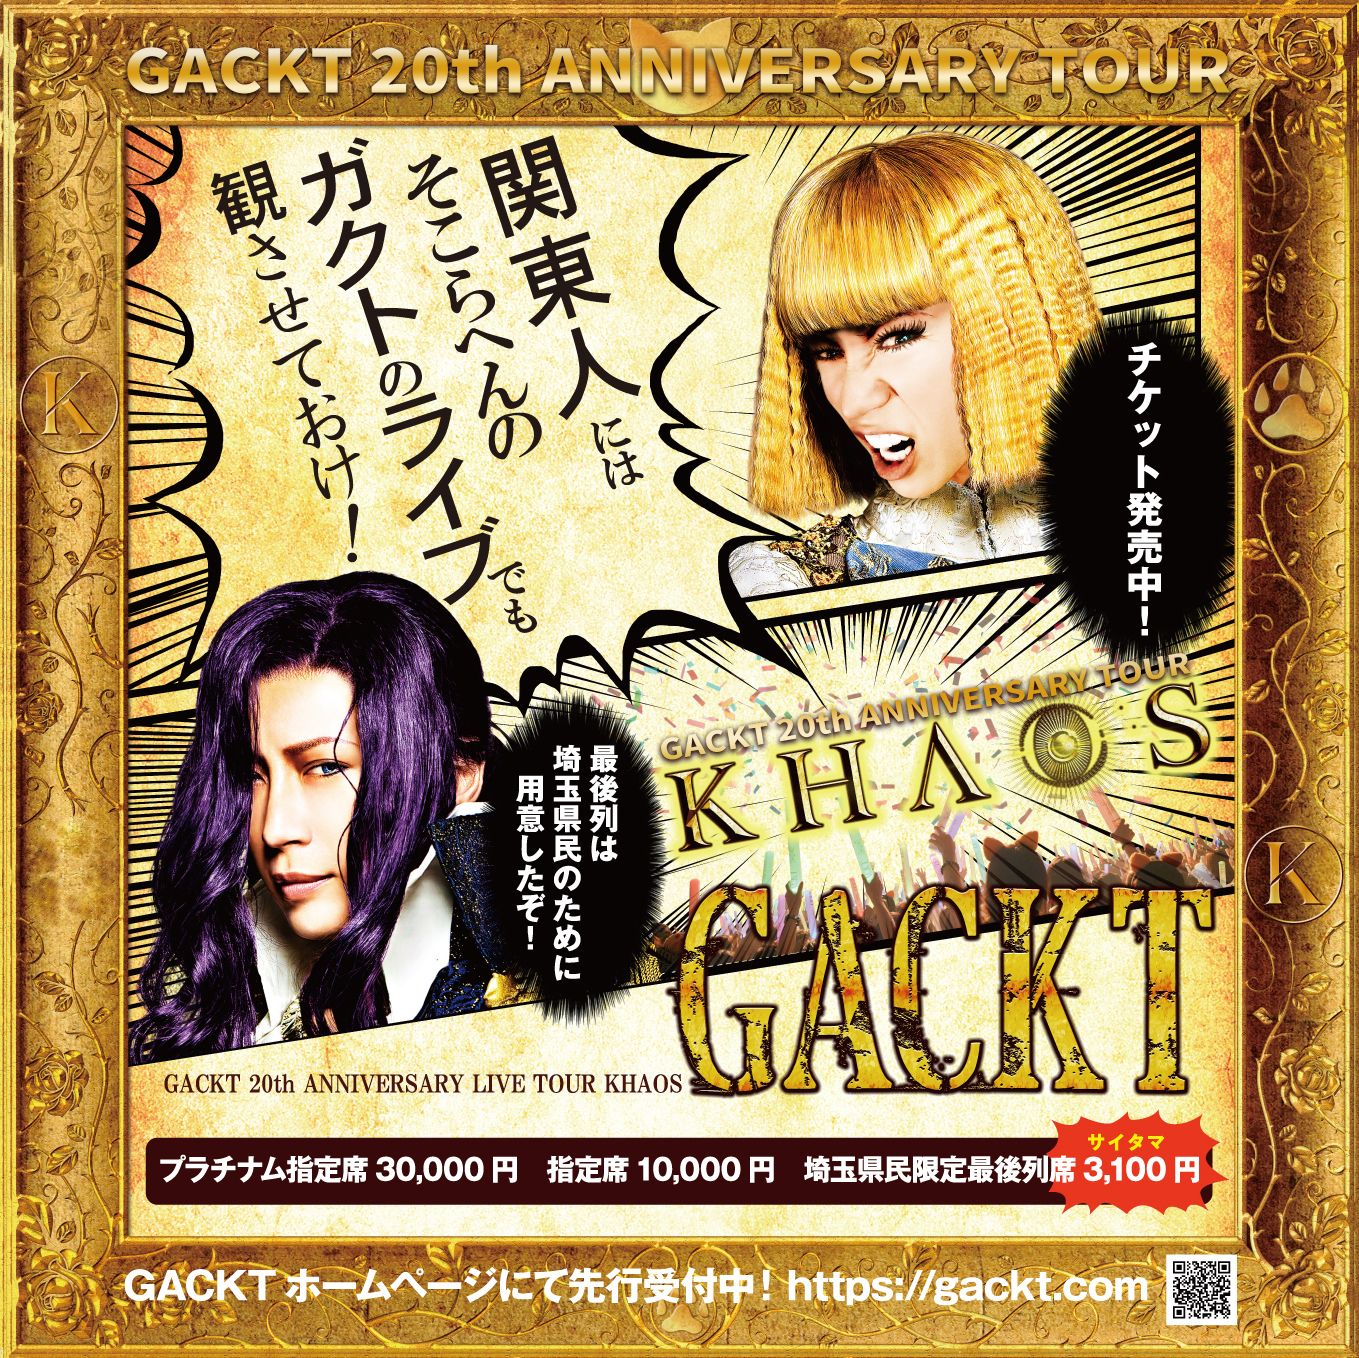 GACKT 20th ANNIVERSARY LIVE TOUR 2020 KHAOS | GACKT OFFICIAL WEBSITE